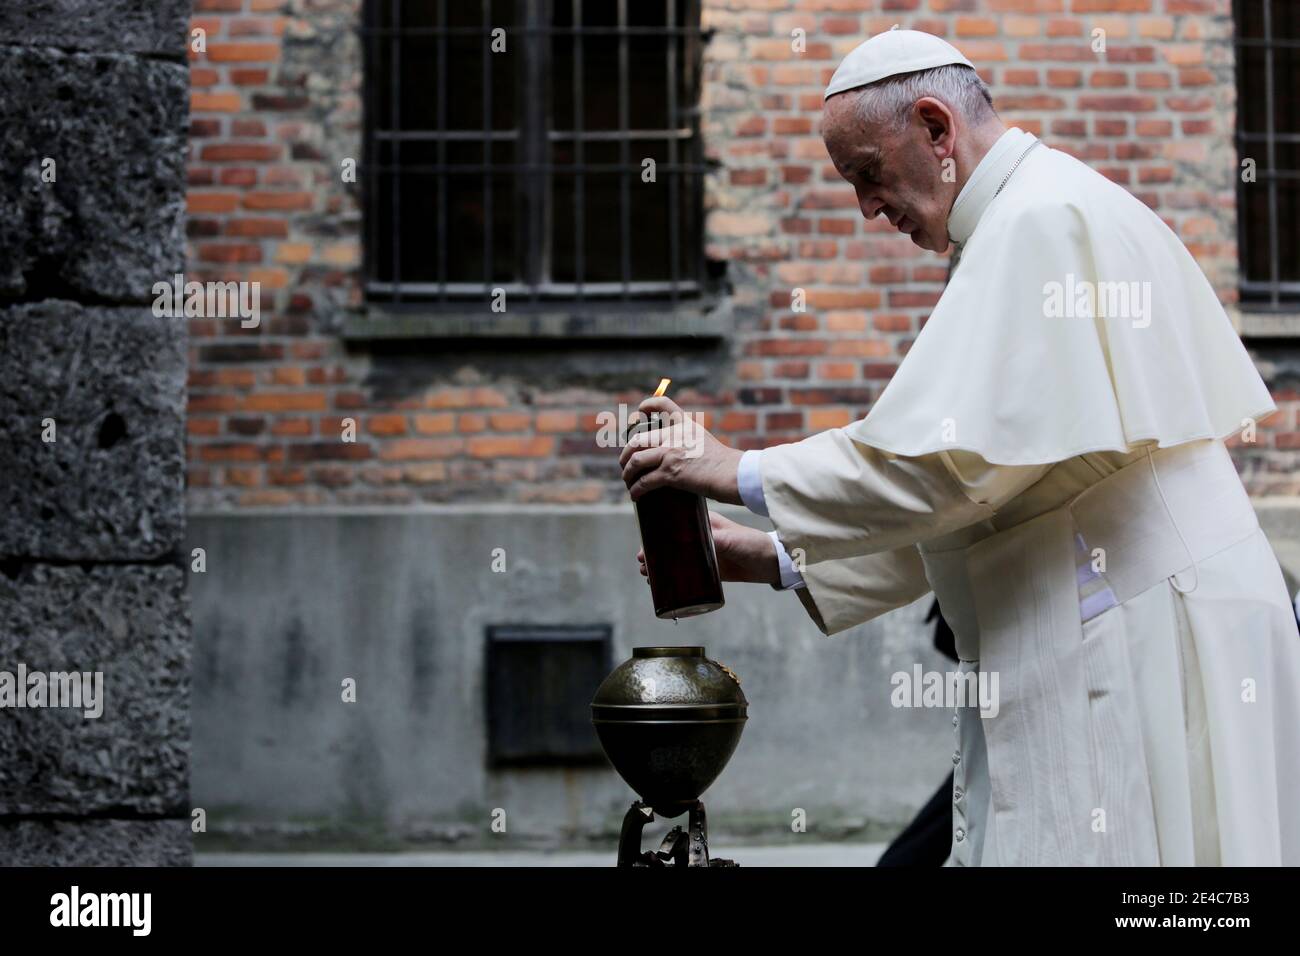 OSWIECIM, POLOGNE - 29 JUILLET 2016 : visite du Saint-Père, le Pape François, sur le site de l'ancien camp de concentration nazi Auschwitz-Birkenau. Banque D'Images